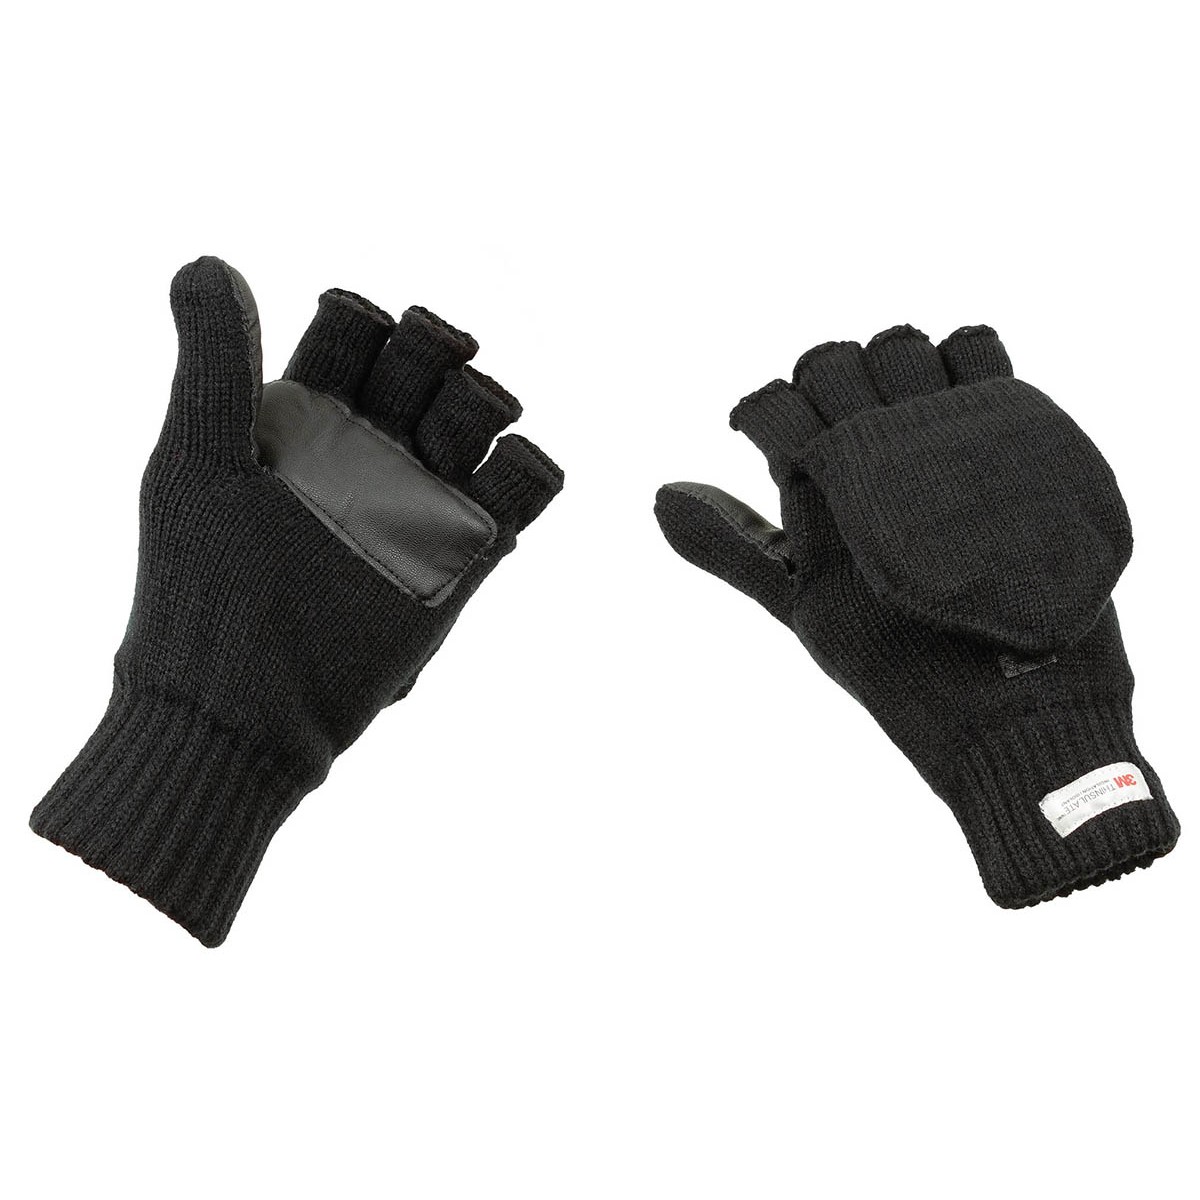 Pletené rukavice bez prstů s podšívkou MFH Thinsulate - černé, L